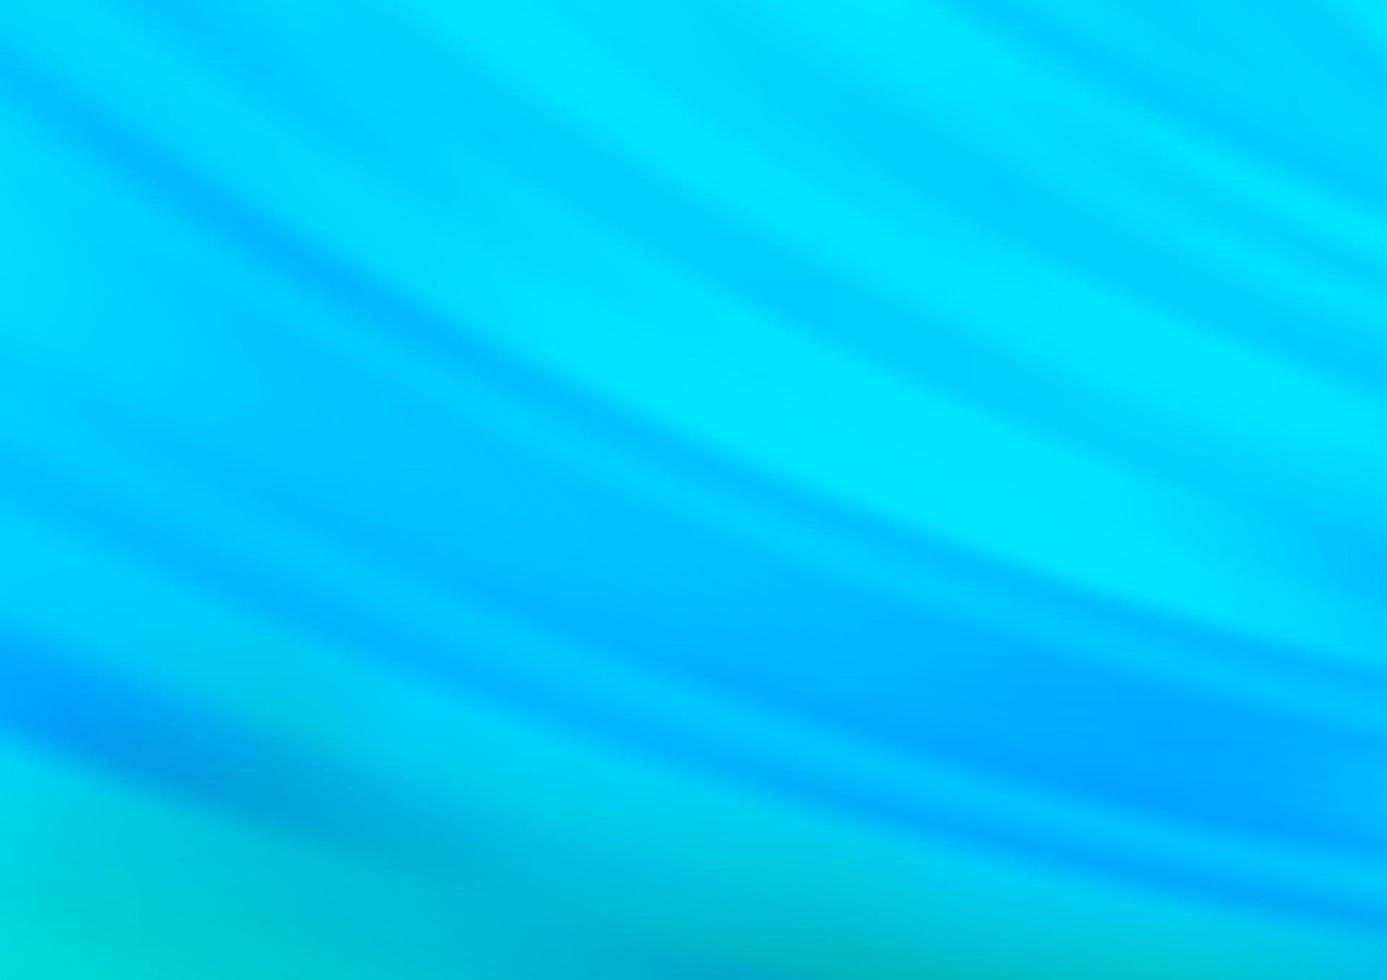 texture vettoriale blu chiaro con linee colorate.